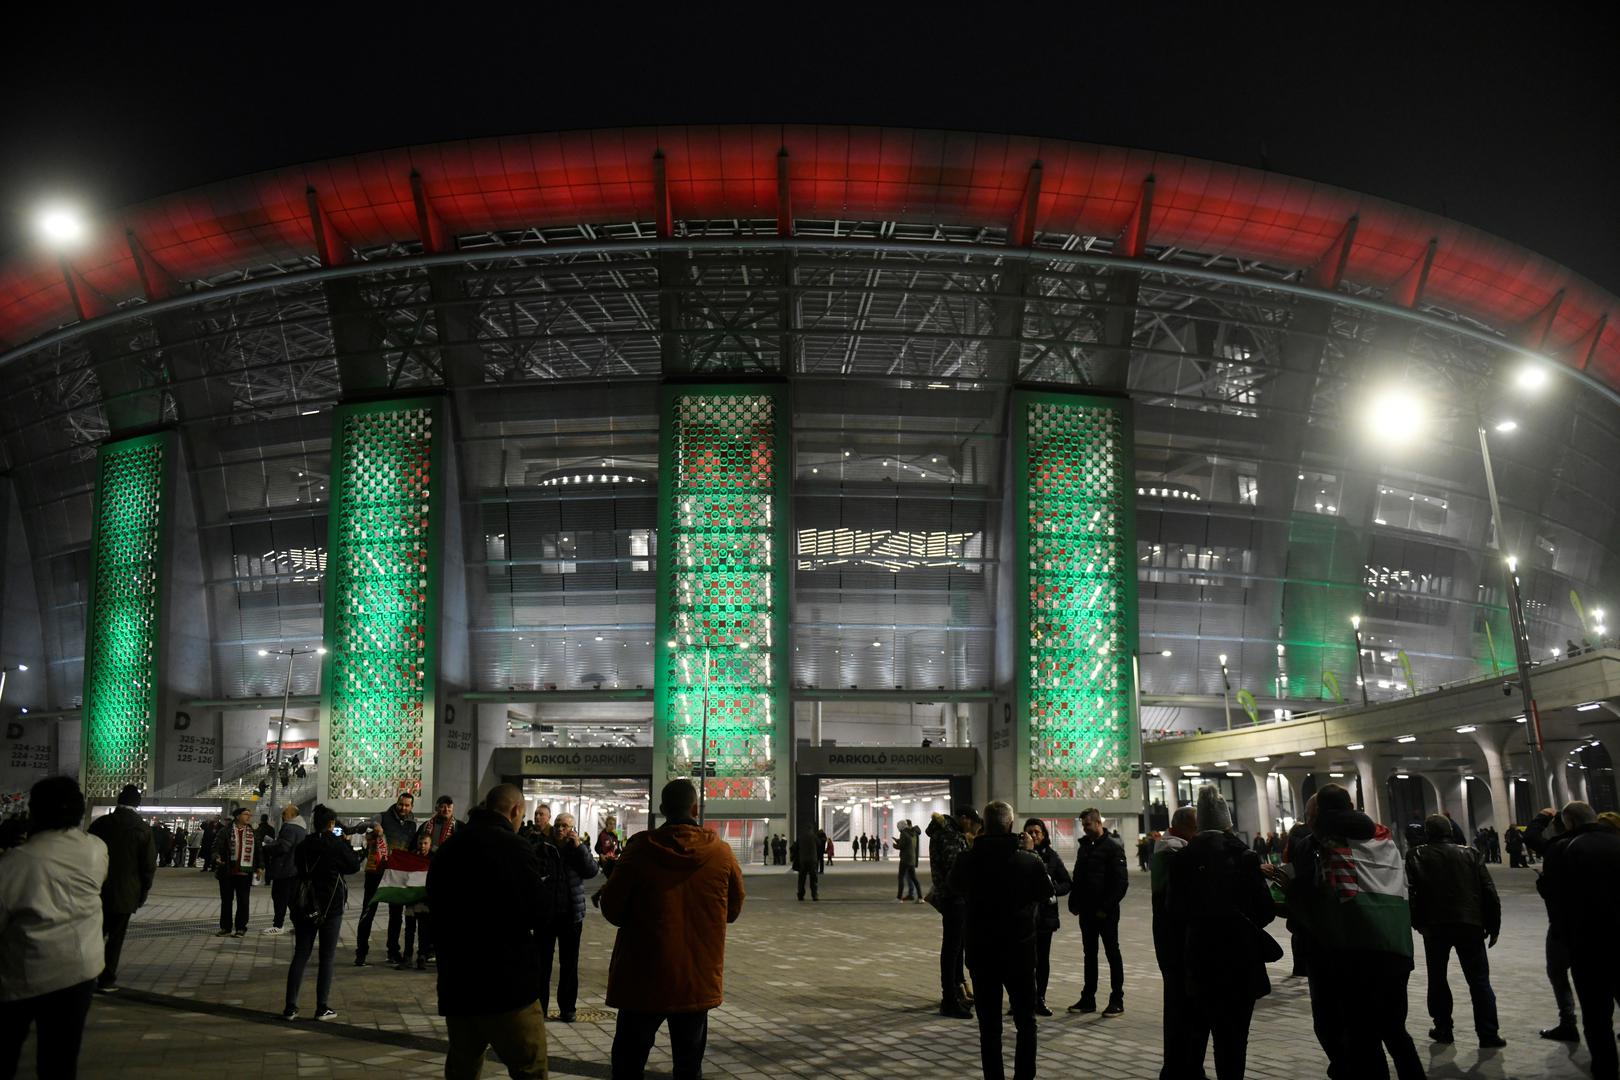 Predivna Arena dobila je ime po najboljem mađarskom nogometašu u povijesti Ferencu Puskásu